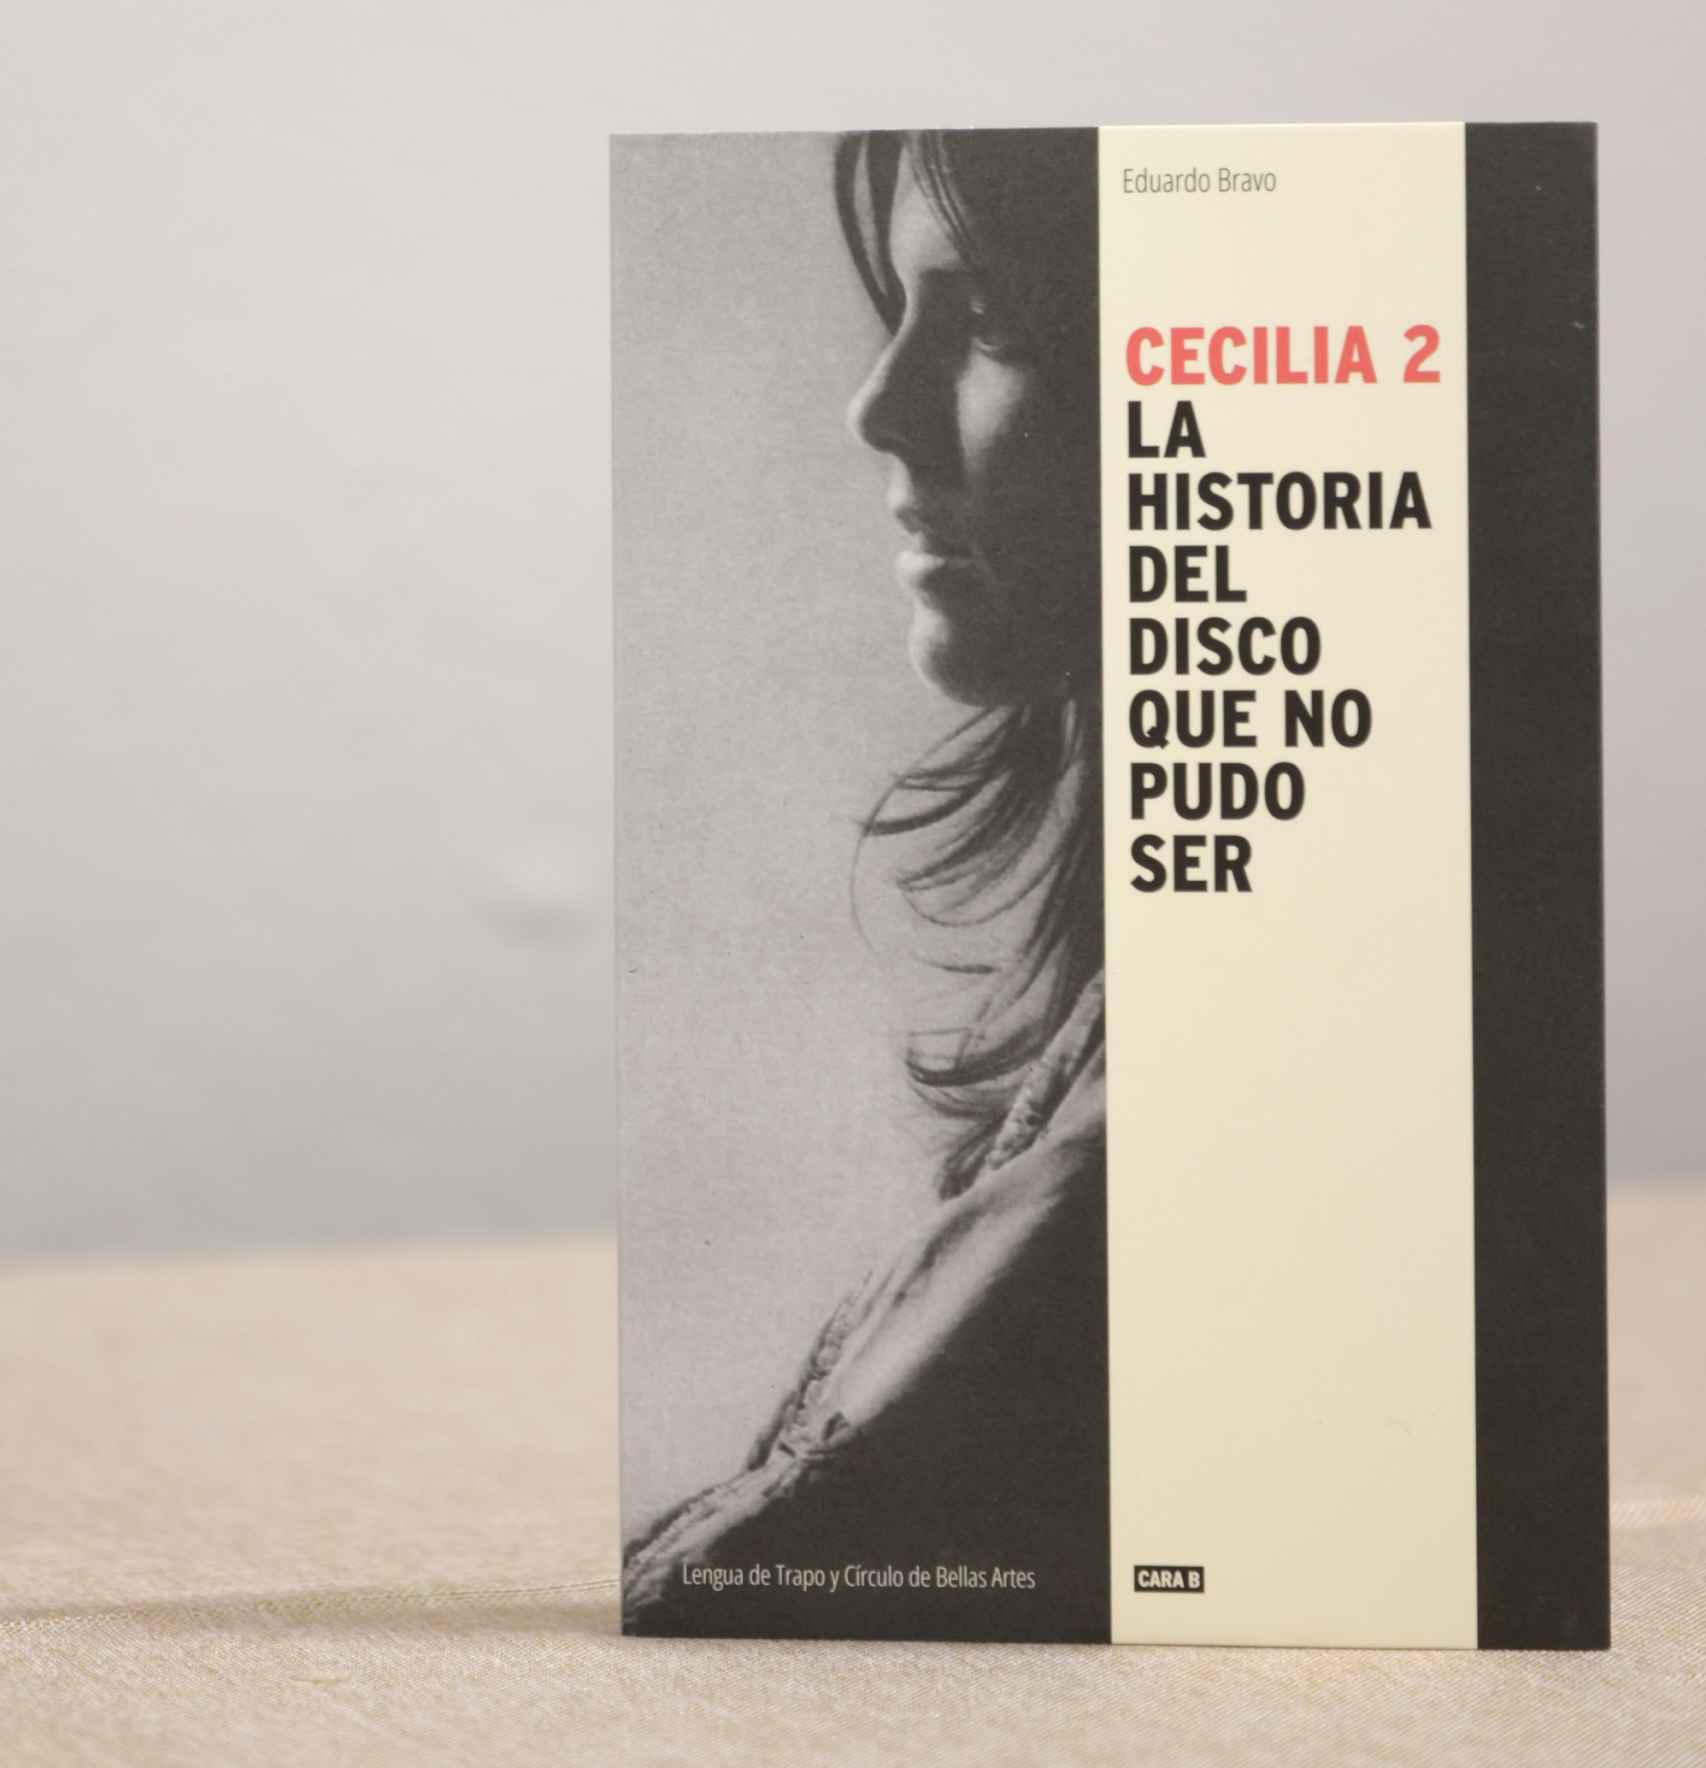 Portada del libro 'Cecilia 2: La historia del disco que no pudo ser' de Eduardo Bravo. Foto: Miguel Balbuena.